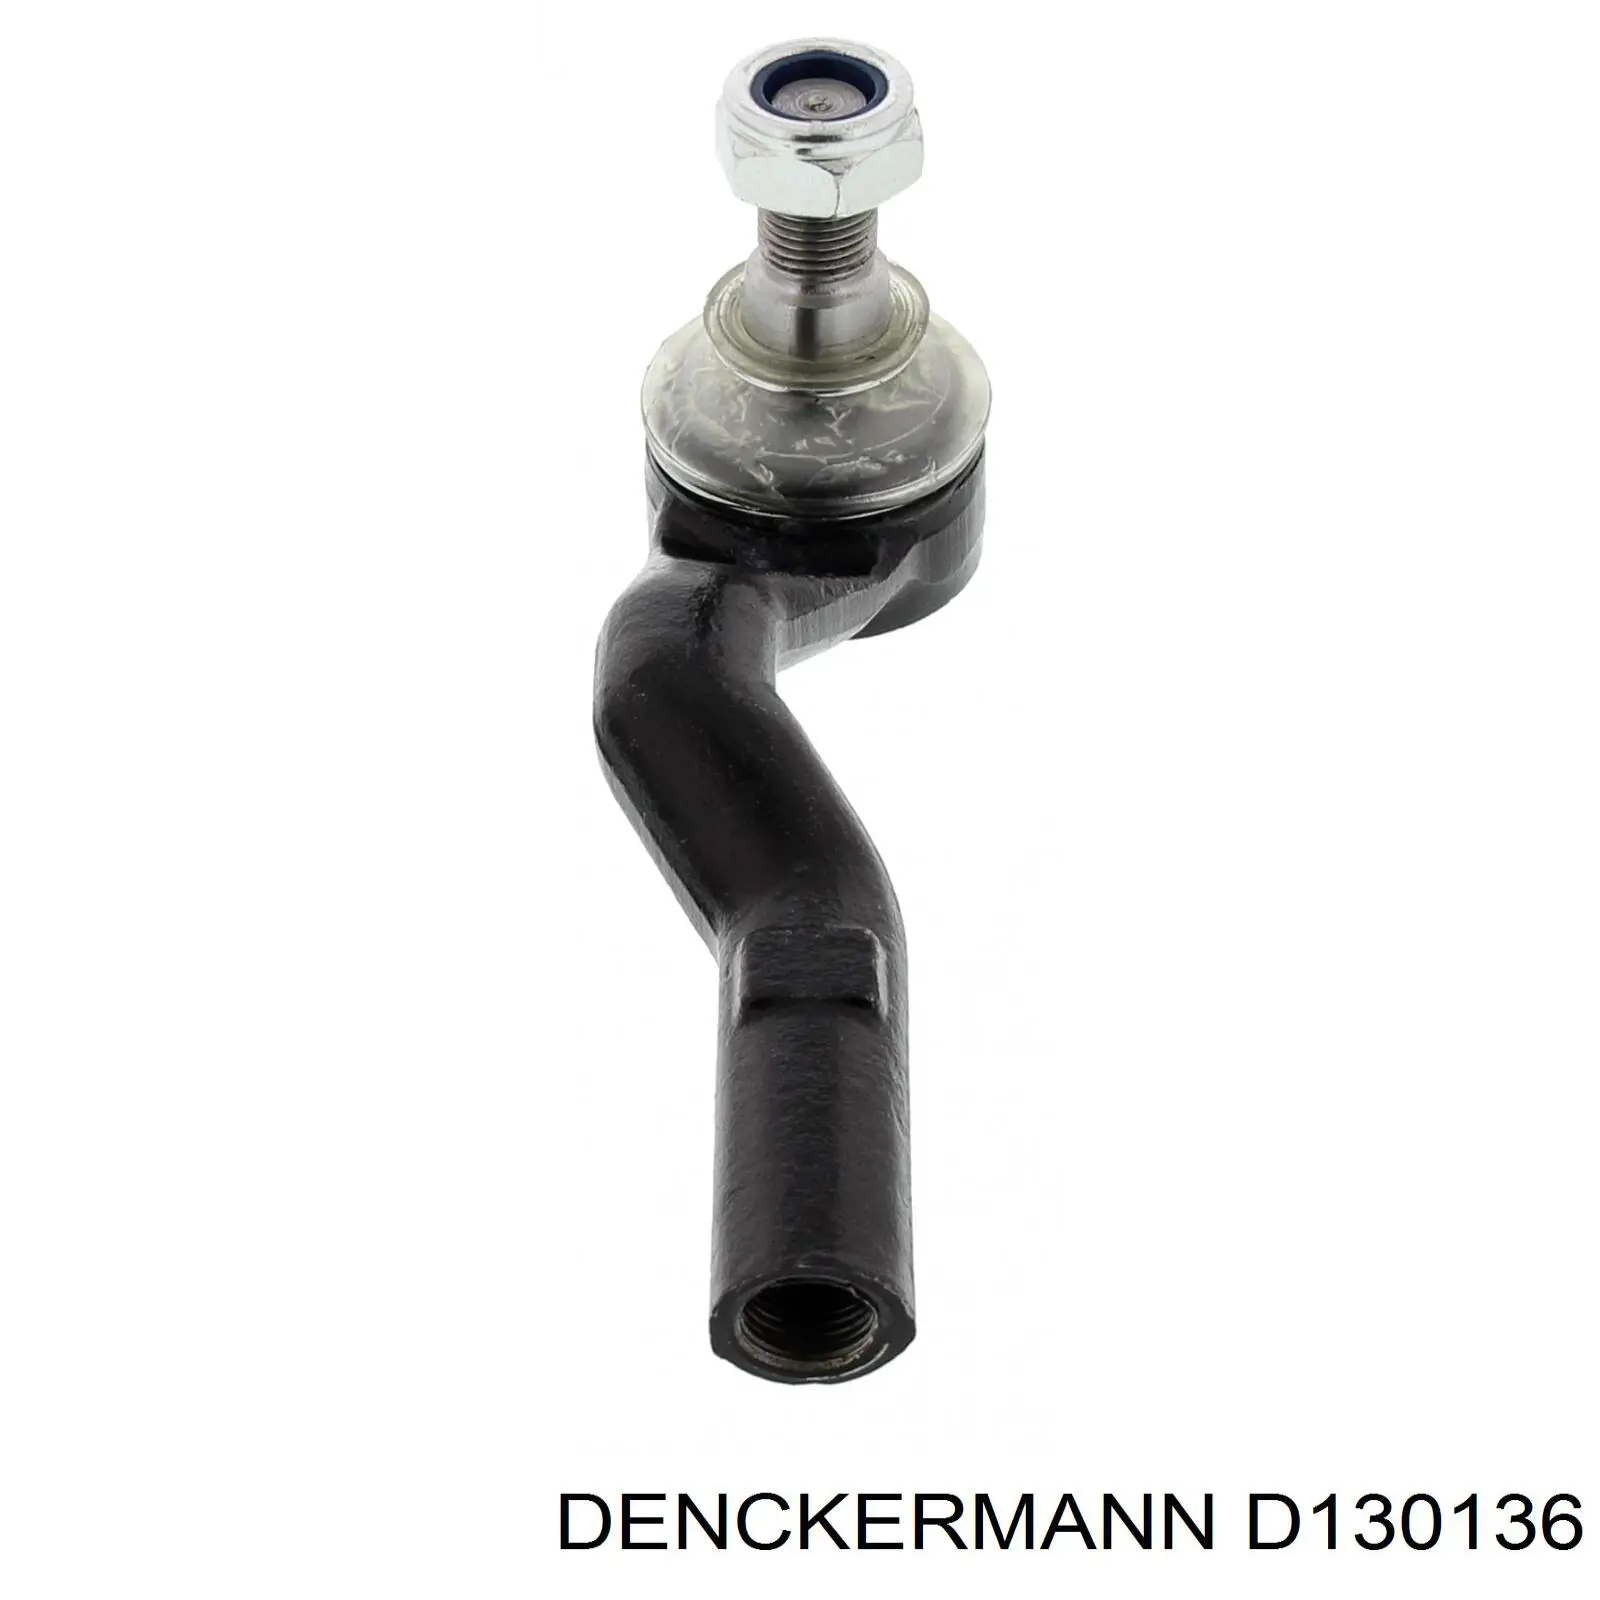 D130136 Denckermann rótula barra de acoplamiento exterior